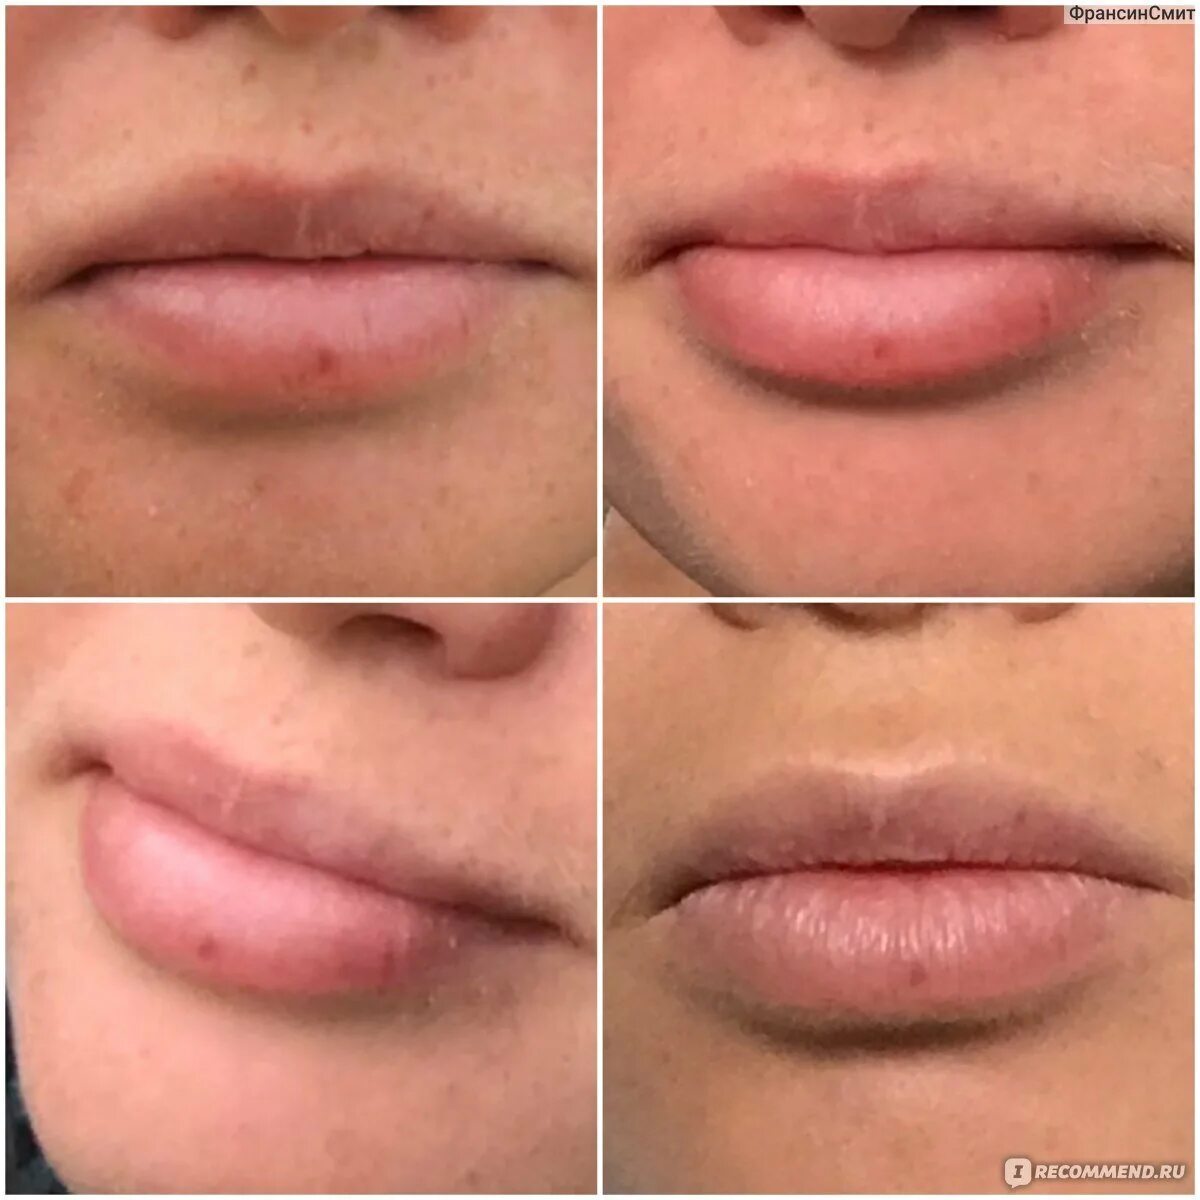 Губы до после и зажившие. Перманентный макияж губ до и после. Заживший перманентный макияж губ. Пудровые губы. Перманент губ до и после.